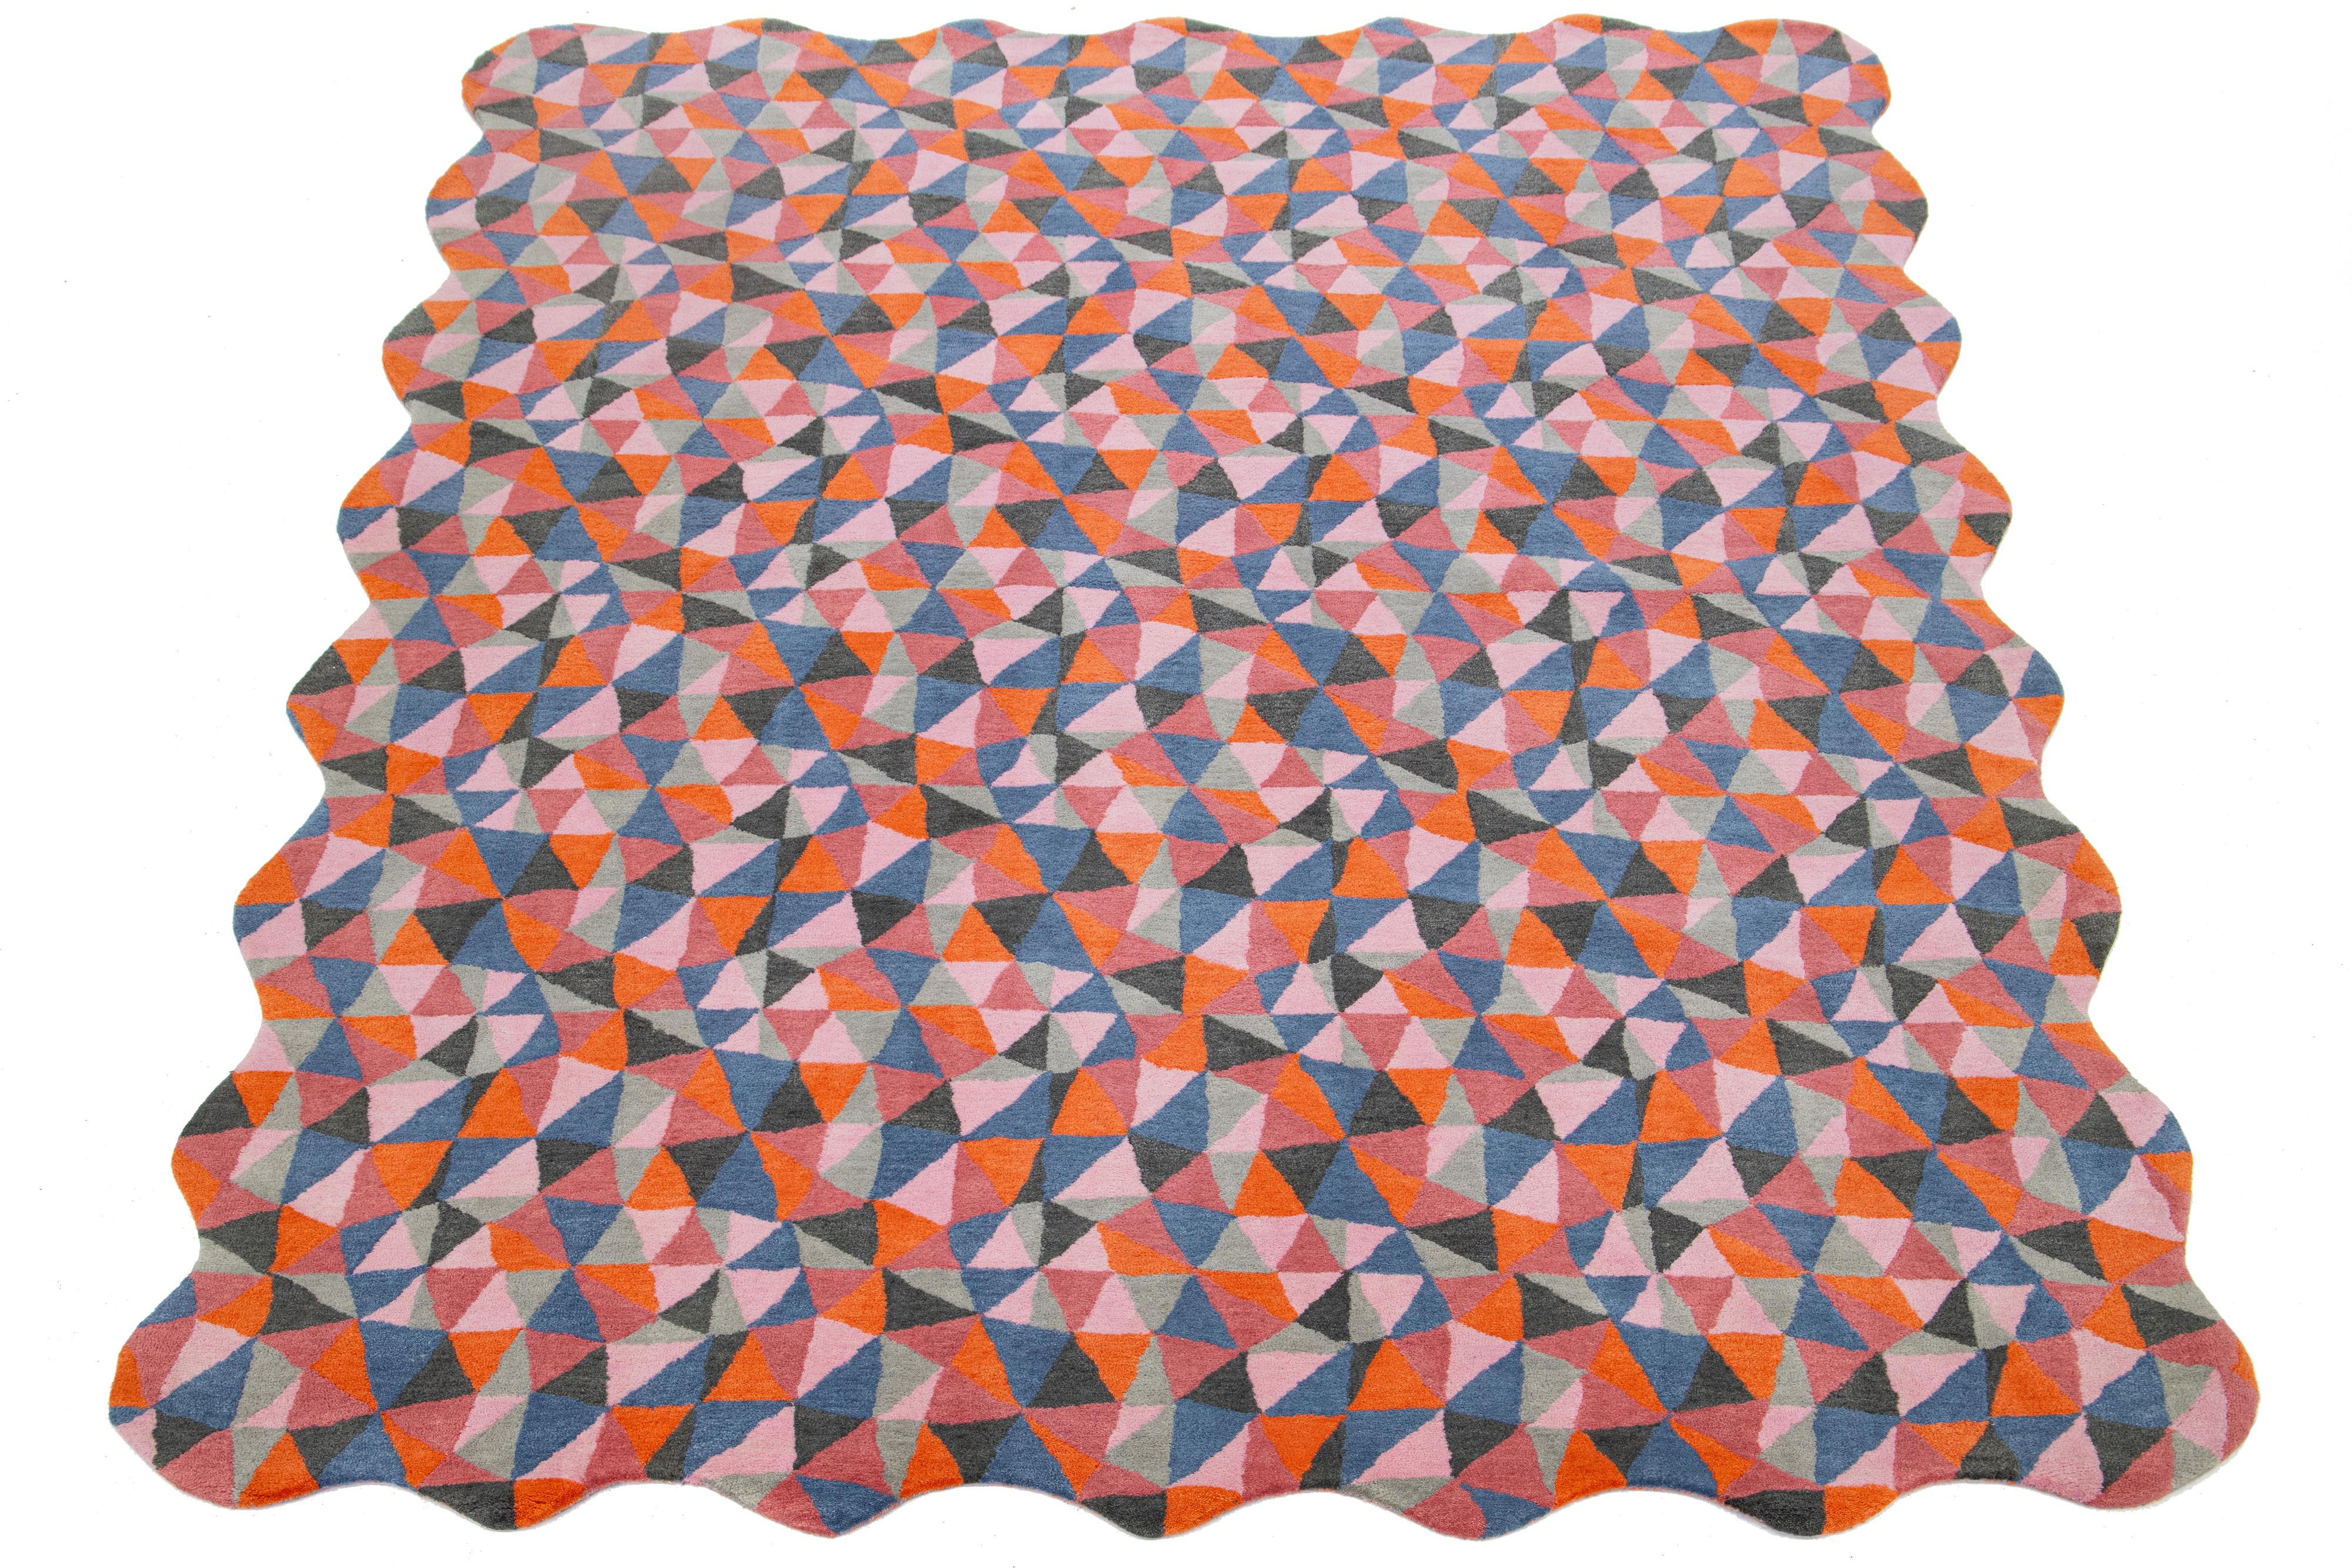 Dieser schöne, moderne, handgetuftete Wollteppich ist Teil unserer Laura Gottwald for Apadana Collection'S und zeigt orange, blaue, rosa und graue Felder. Dieses Mosaico-Muster: Mosaico ist ein kaleidoskopisches, sich wiederholendes Muster aus